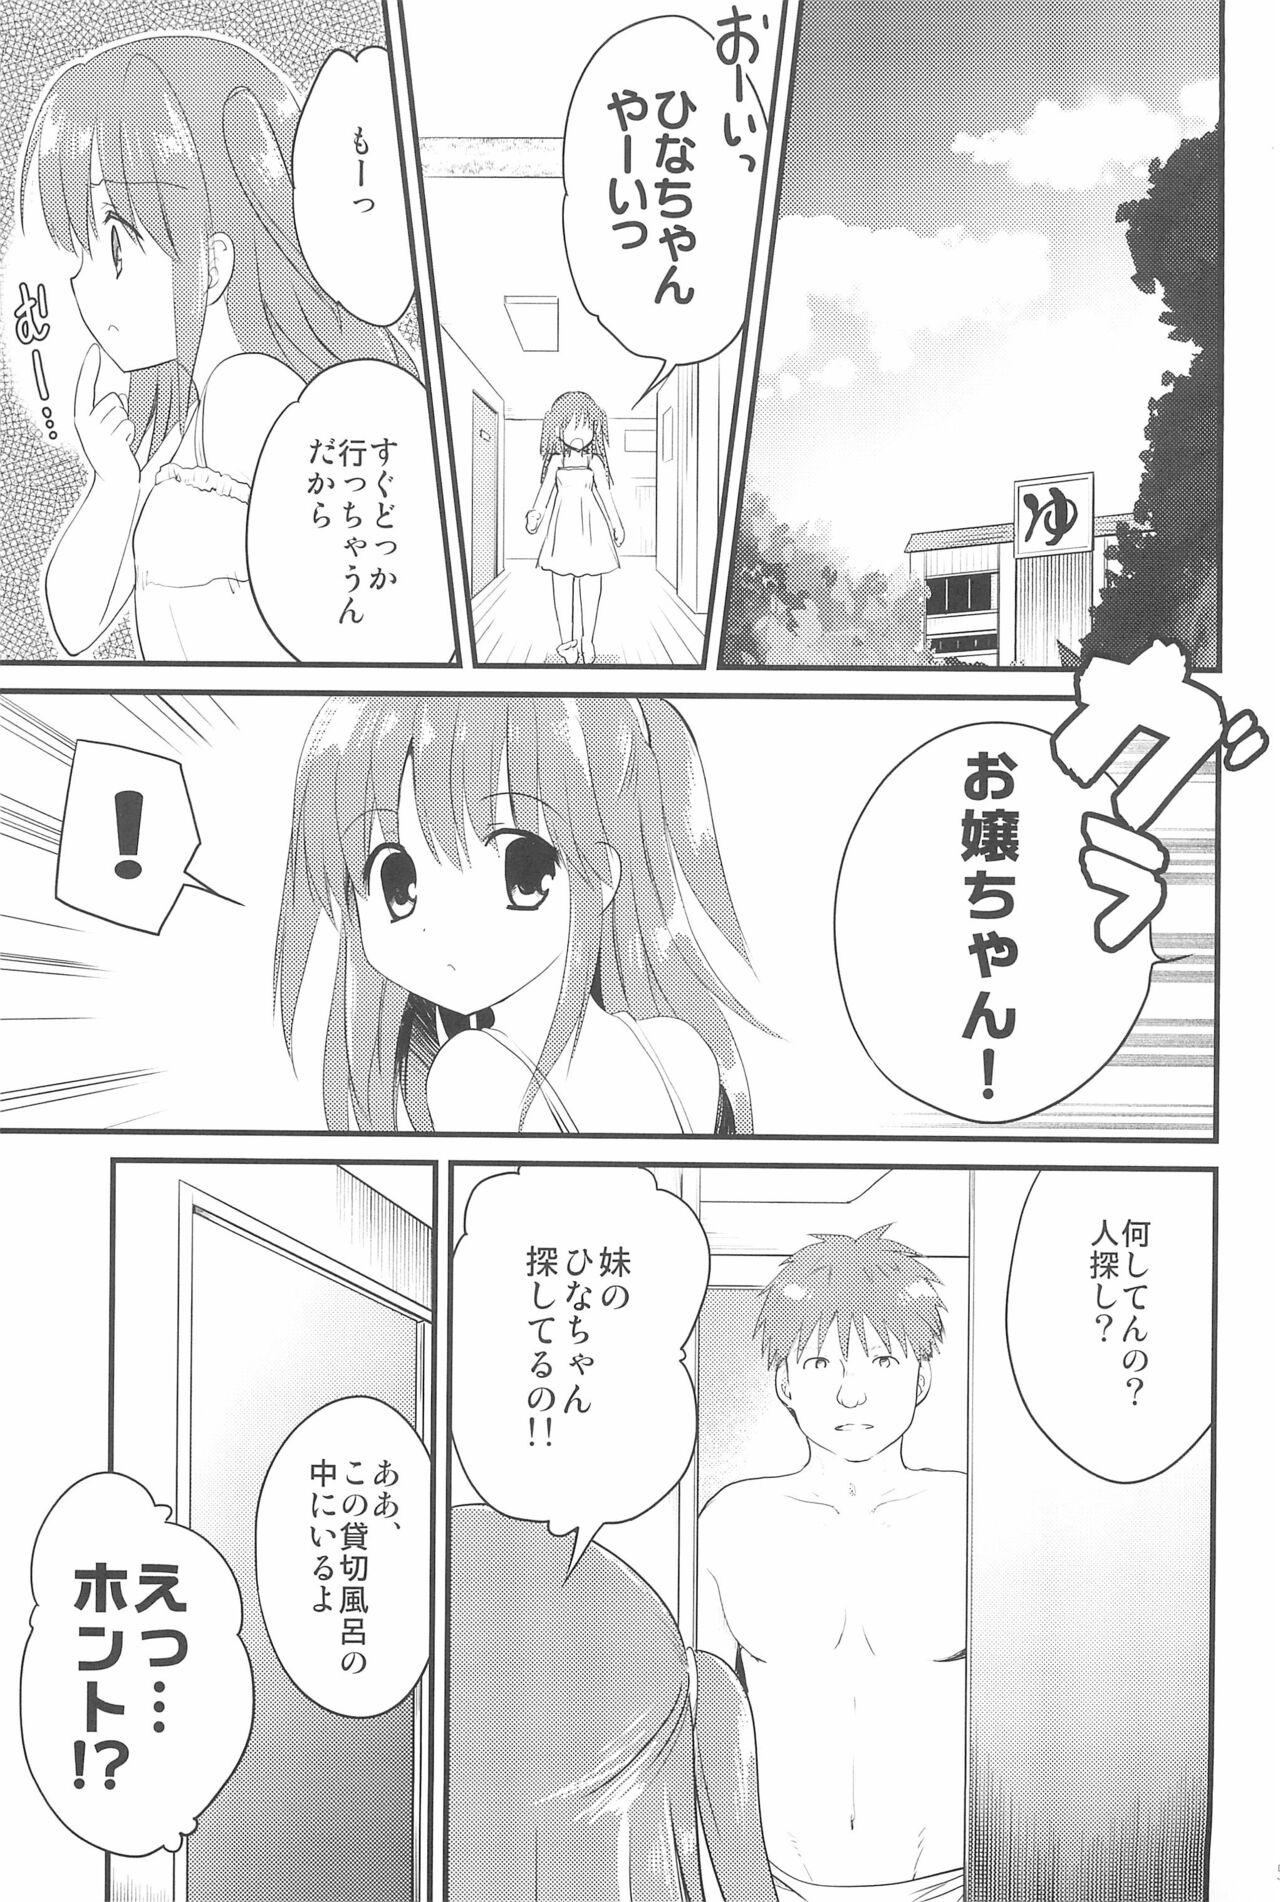 The Yukine-chan to Anyaru ecchi - Original Teens - Page 5